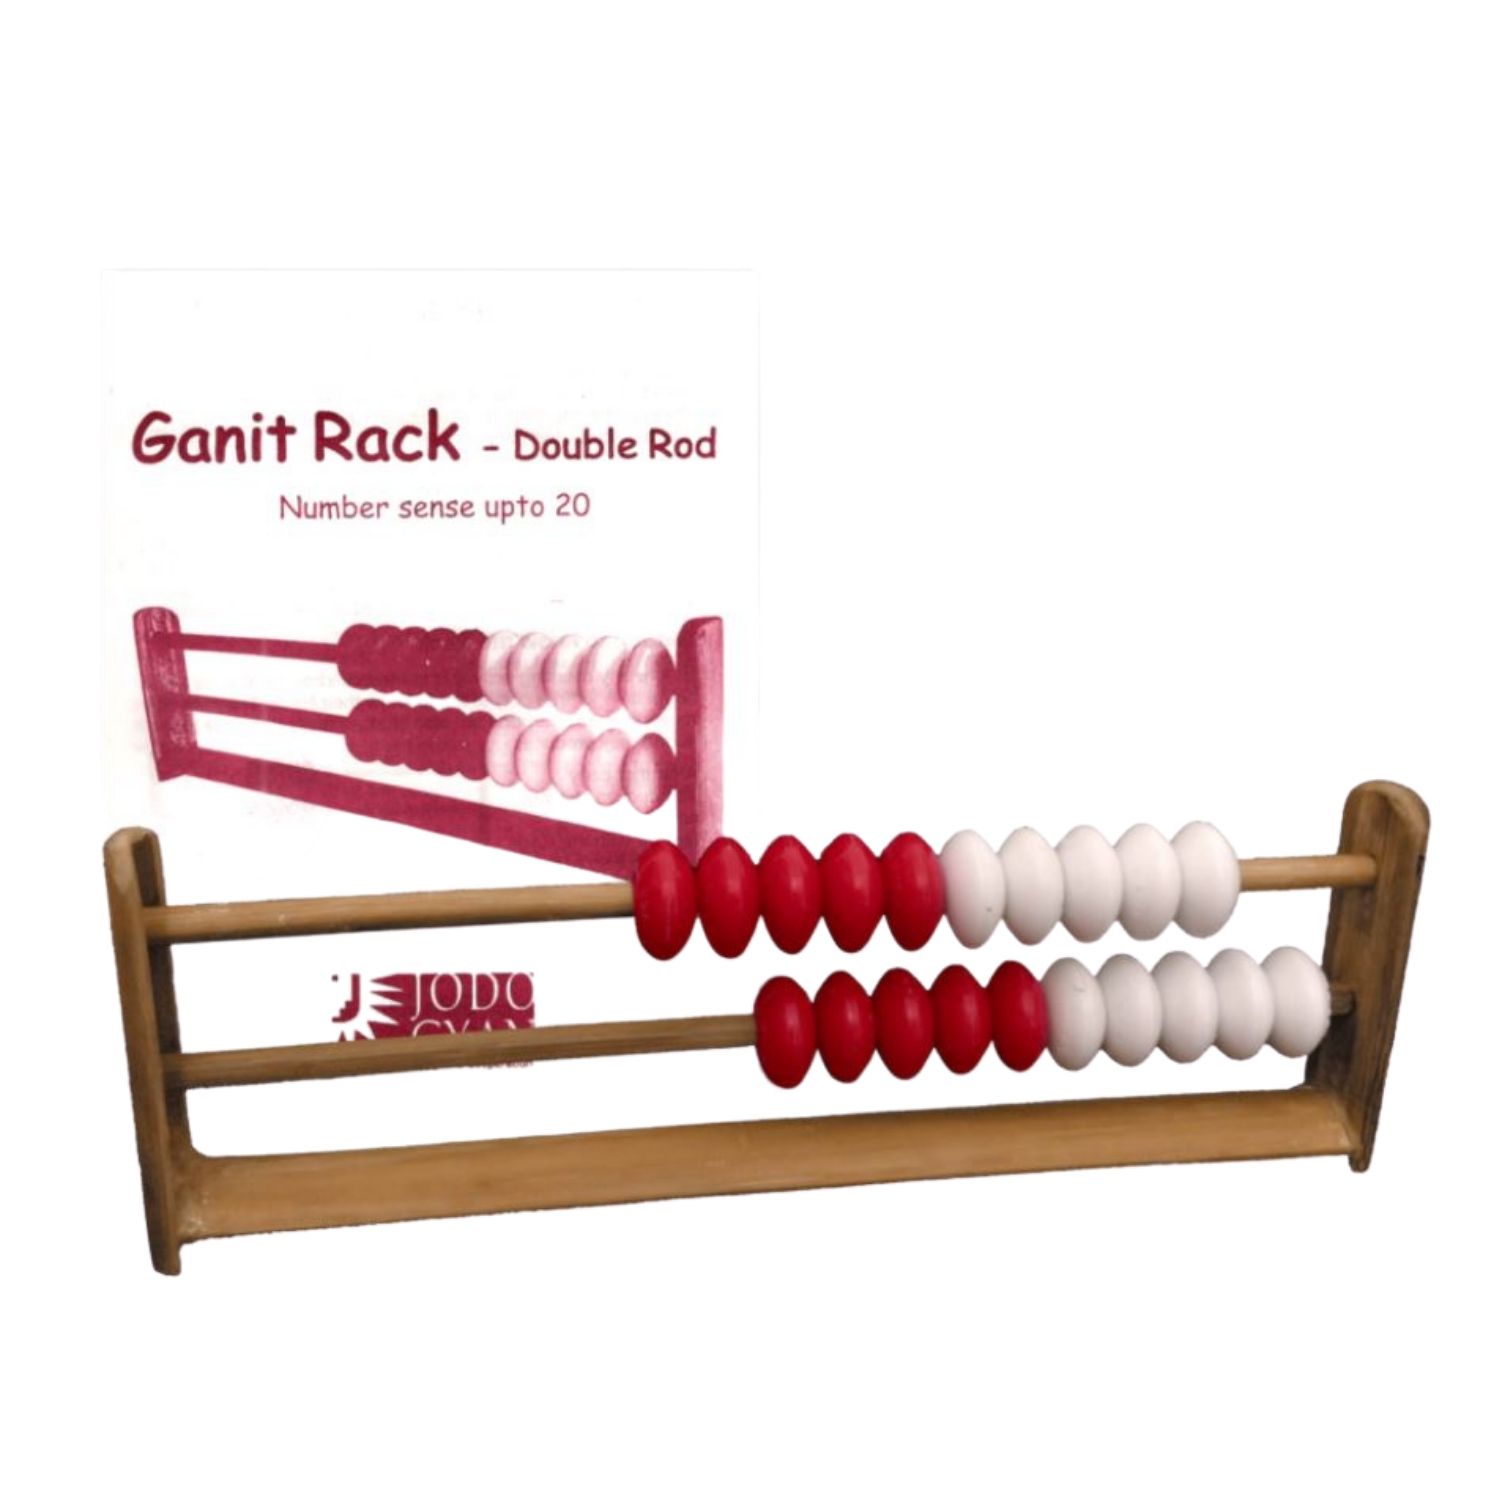 Jodo Gyan Ganit Rack Double Rod Teachers